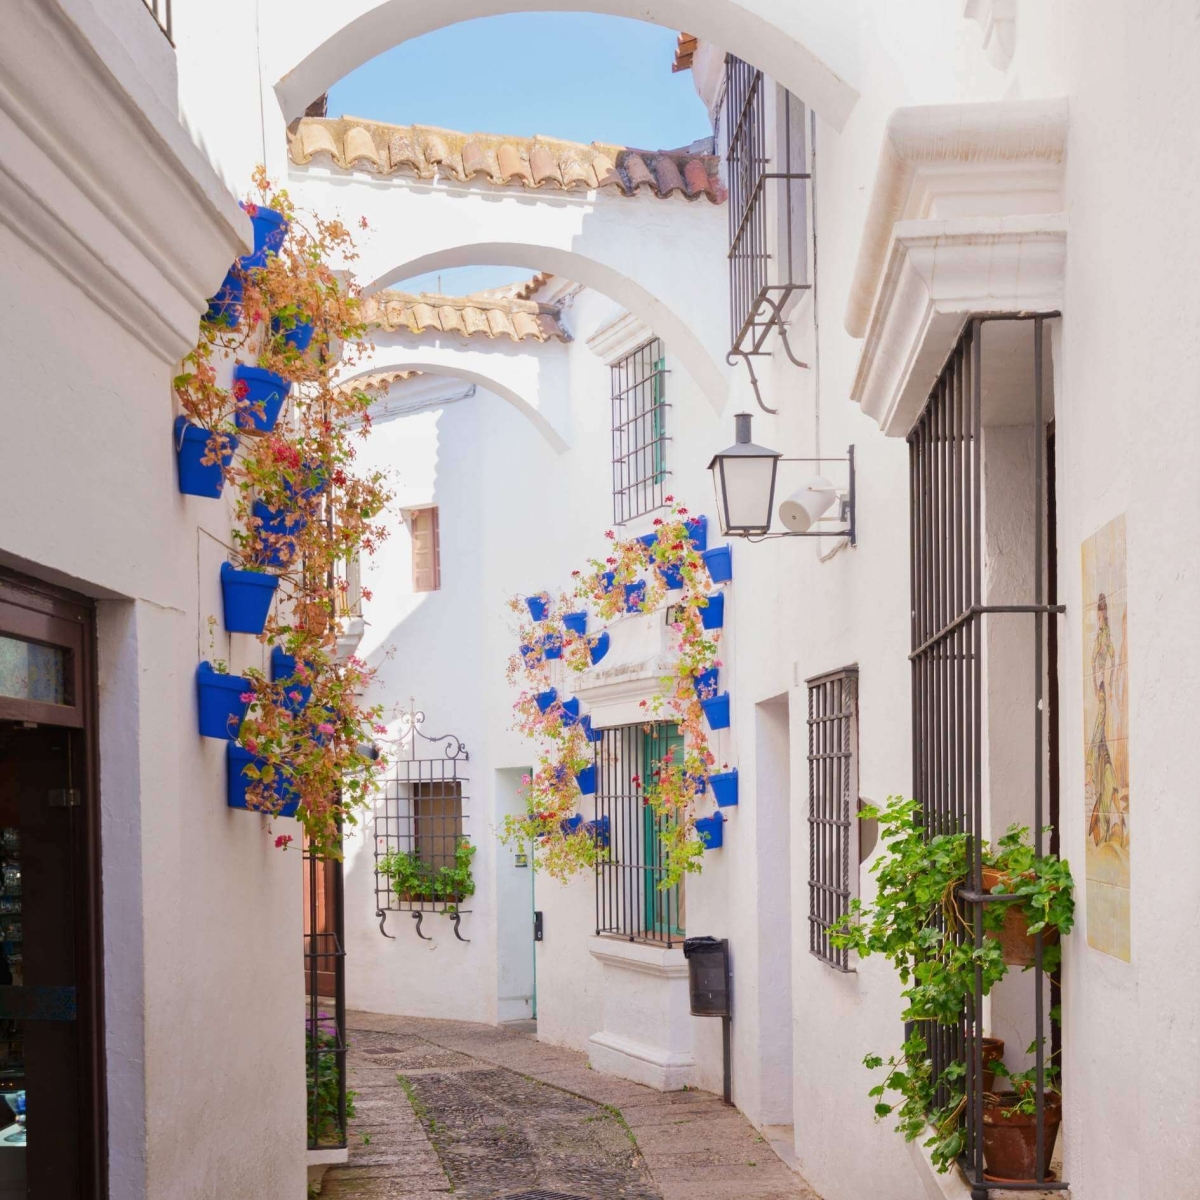 Straße Poble Espanyol mit für Andalusien typischen weißen Wänden, Barcelona, ​​Katalonien, Spanien